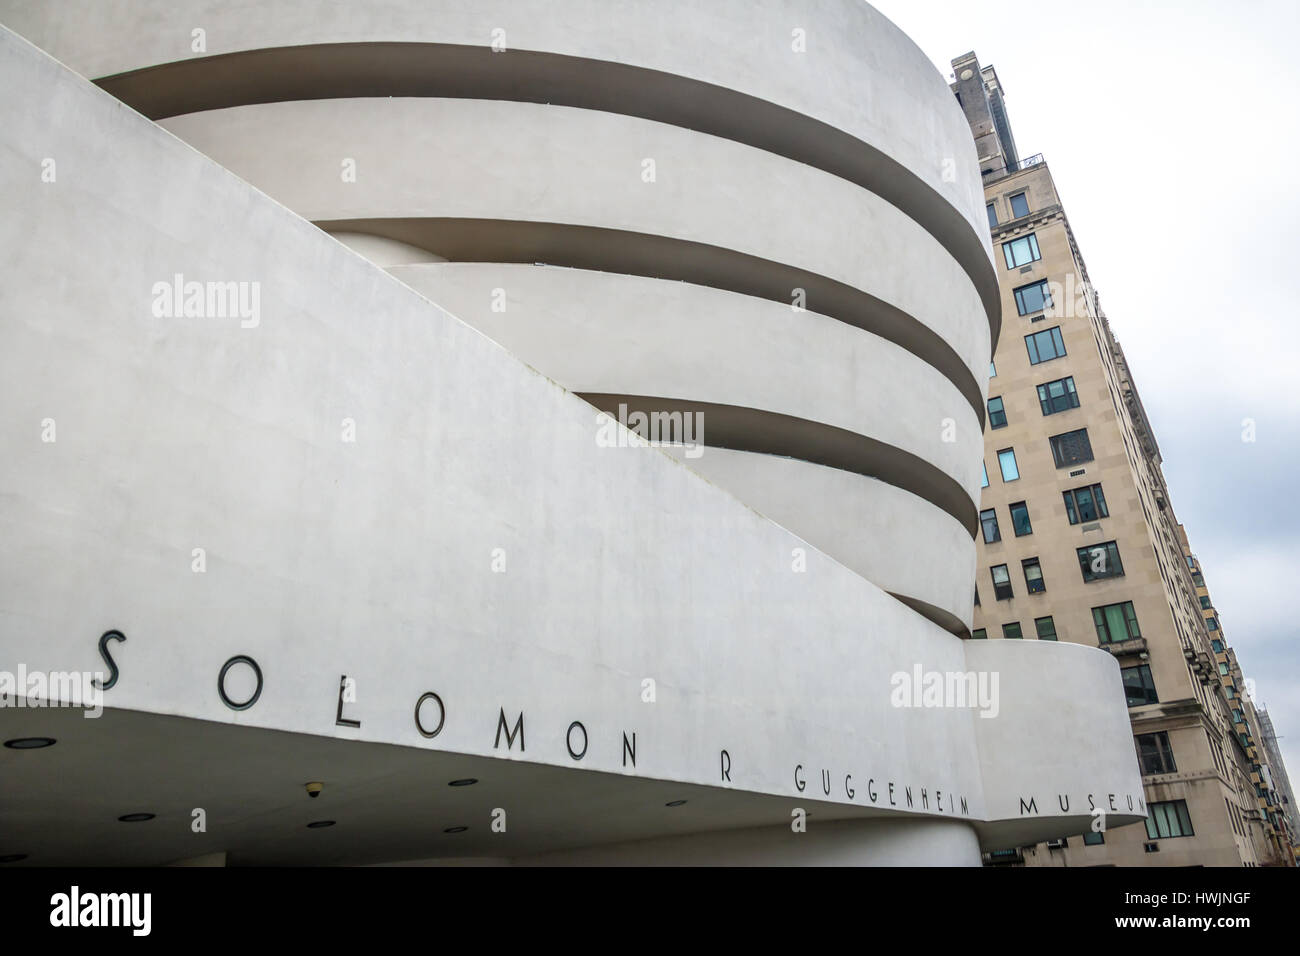 Le Musée Solomon R. Guggenheim d'art moderne et contemporain - New York, USA Banque D'Images